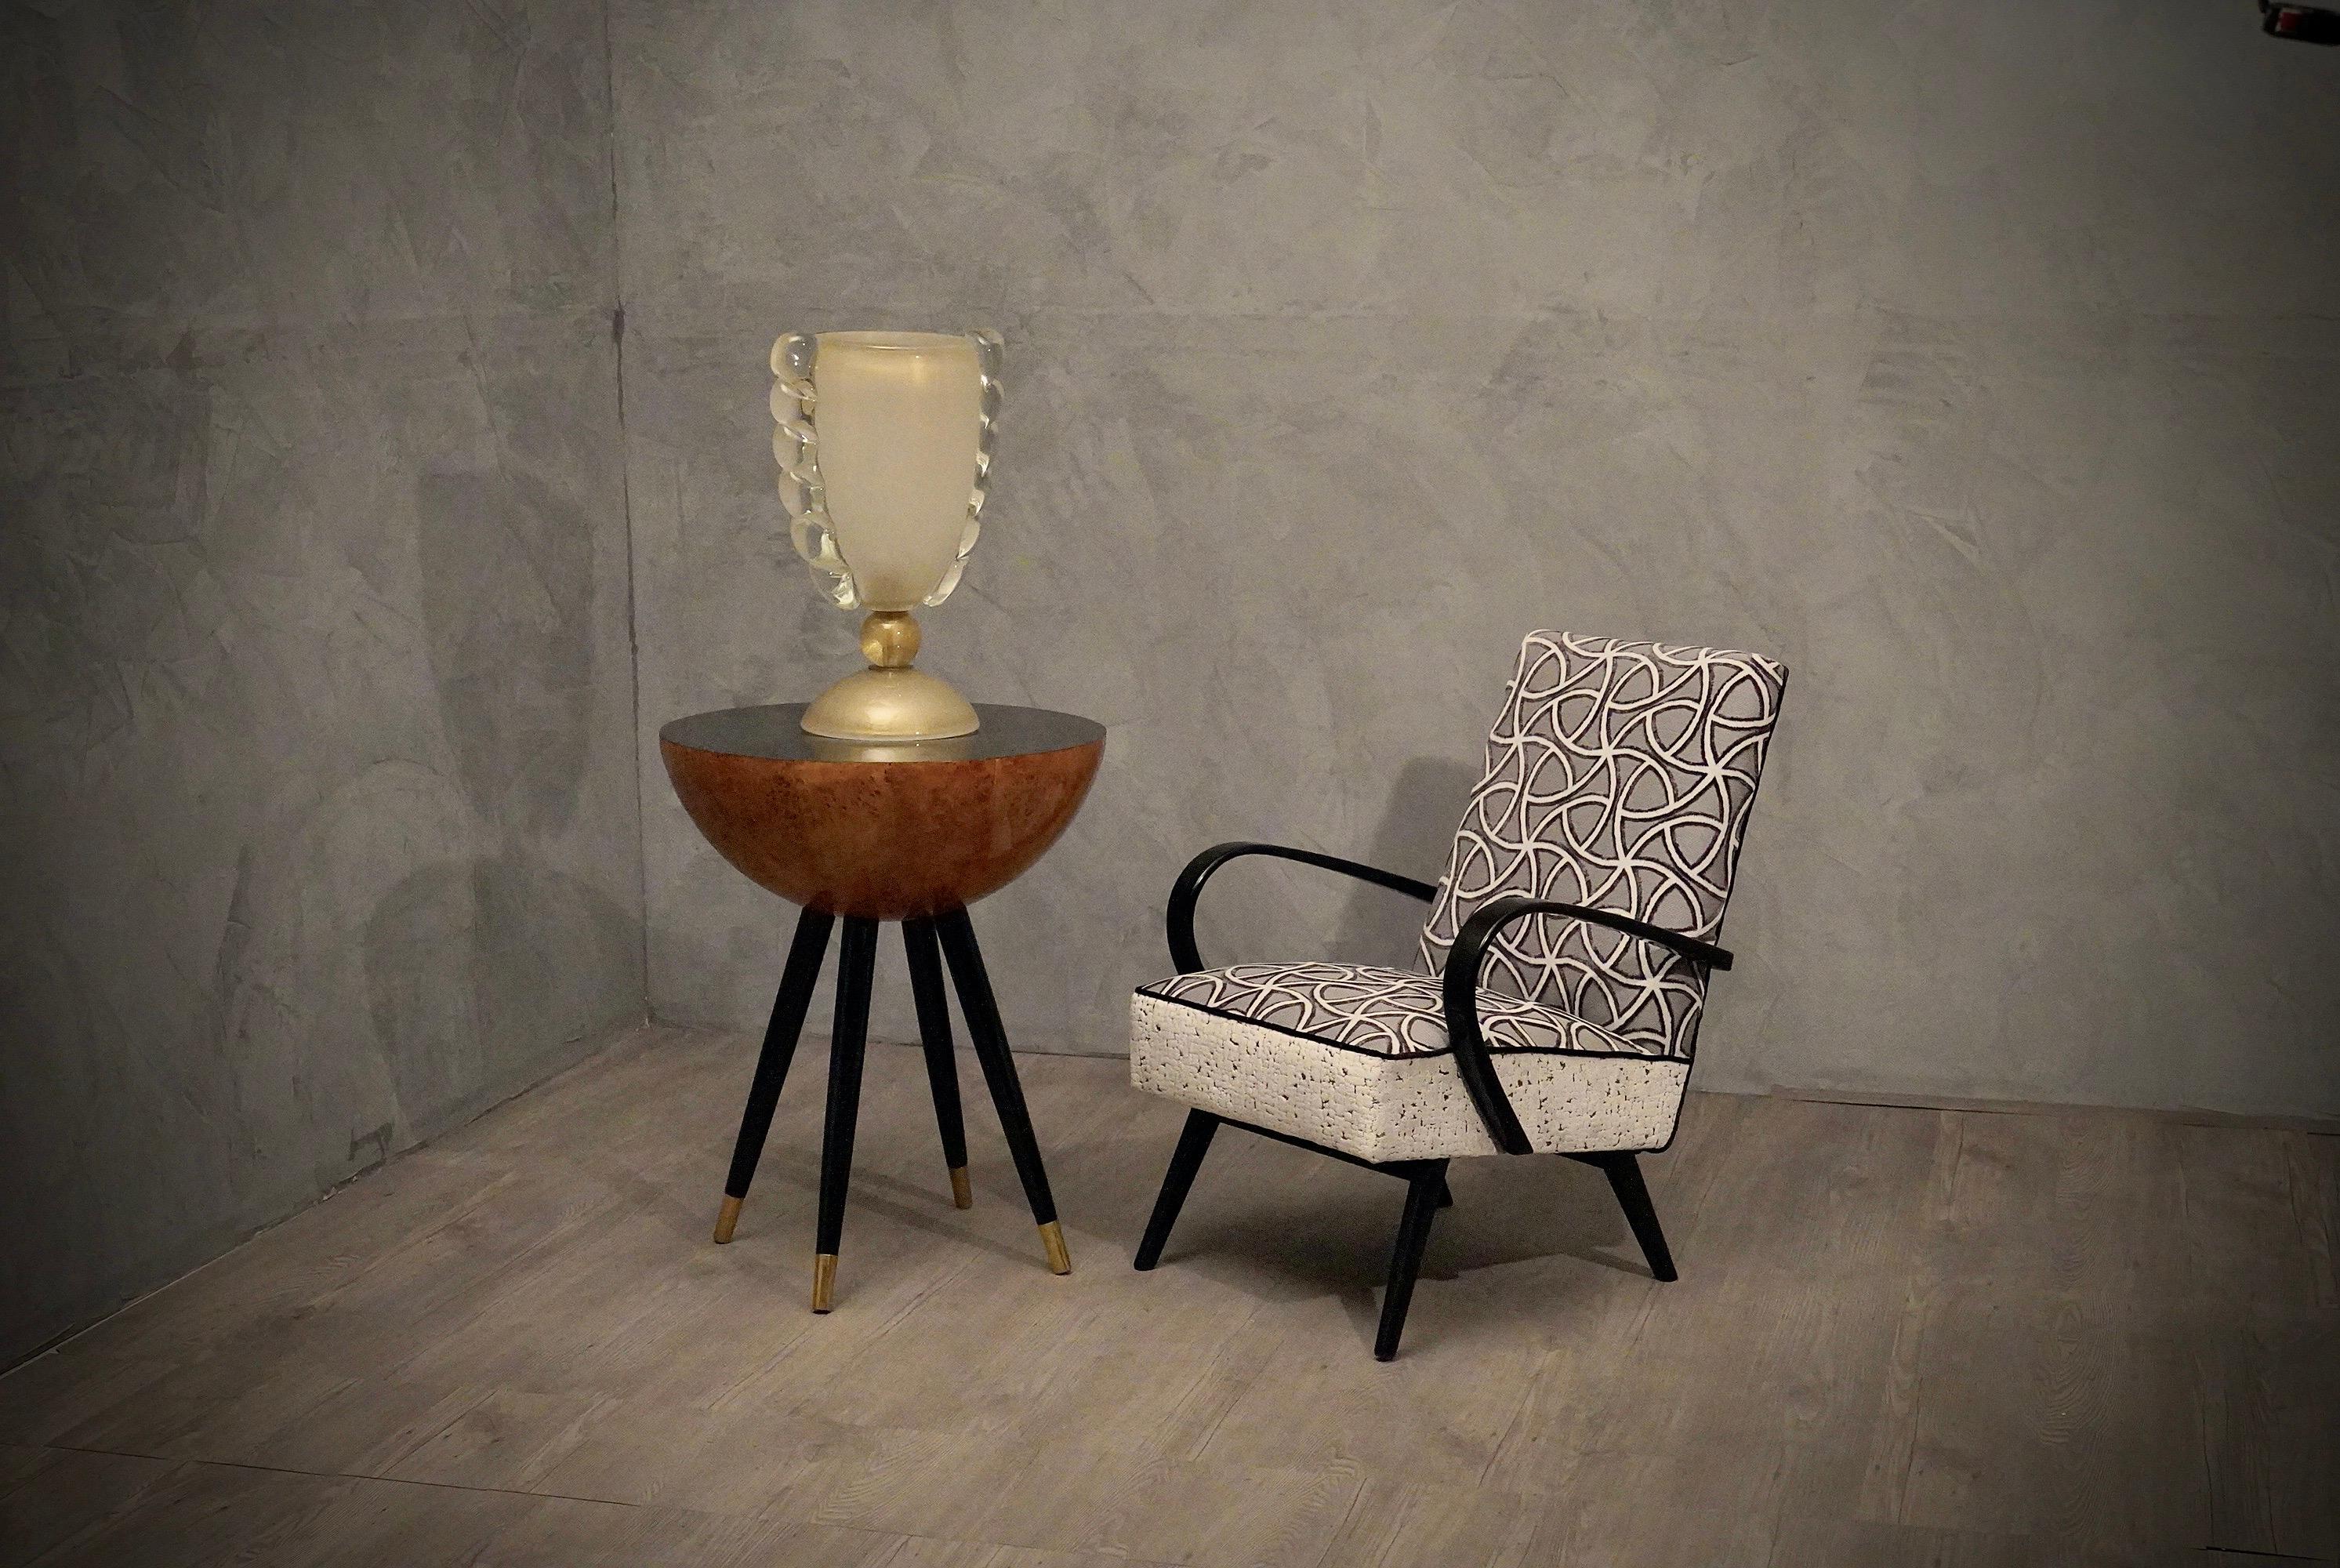 Tissu raffiné et forme linéaire pour une paire de fauteuils italiens des années 1950.

Cette extraordinaire paire de chaises des années 1950 est recouverte de velours combiné par notre atelier de tapisserie. Ces fauteuils ont un aspect très